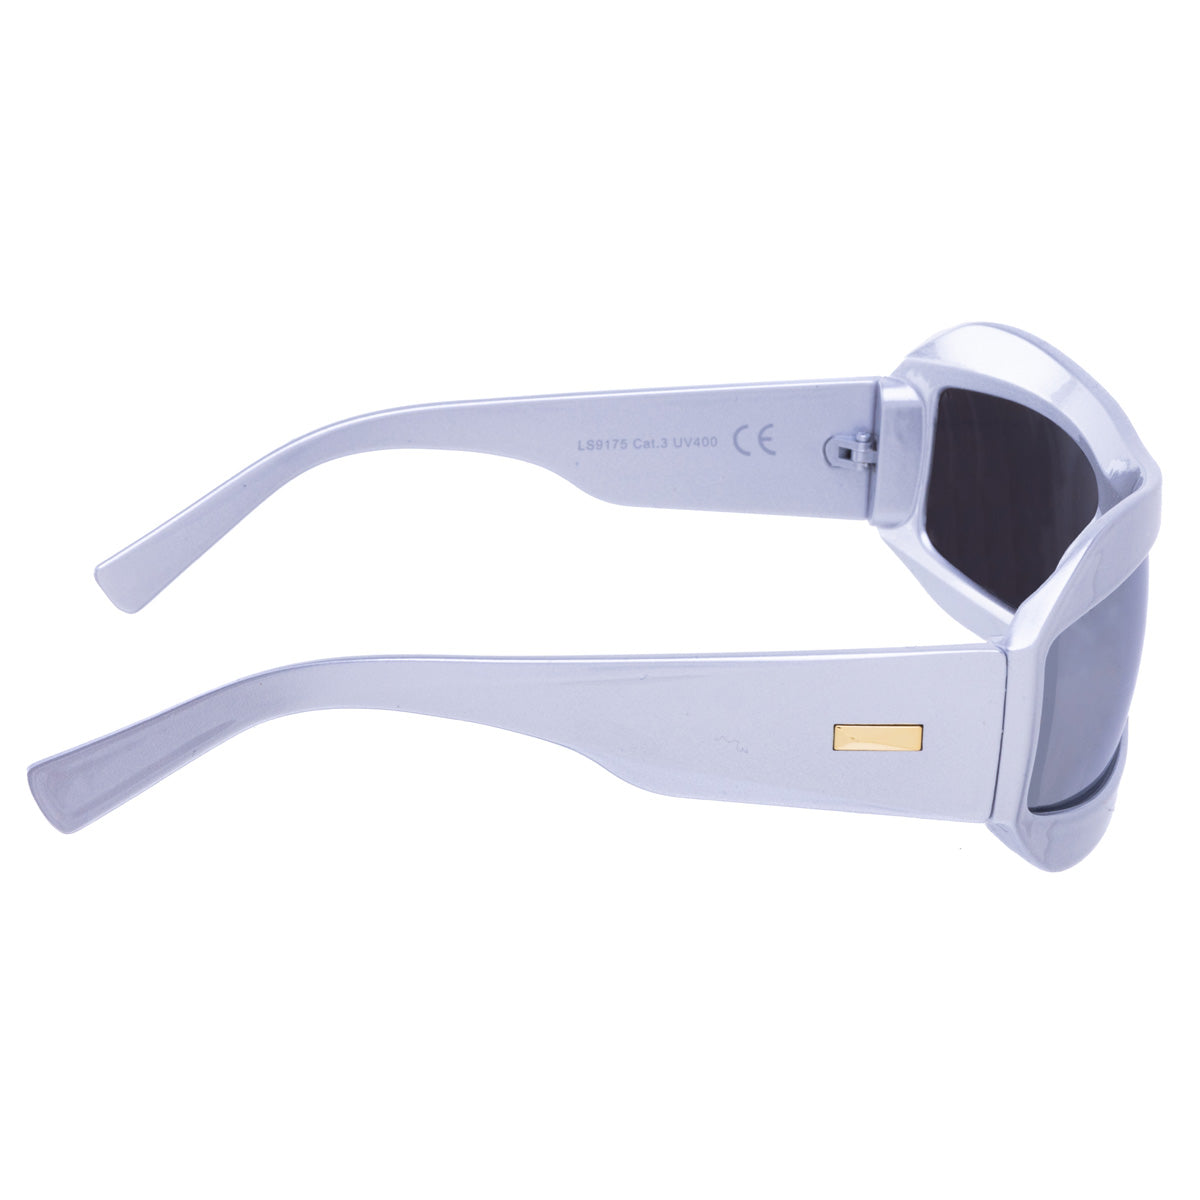 Futuristic sporty sunglasses